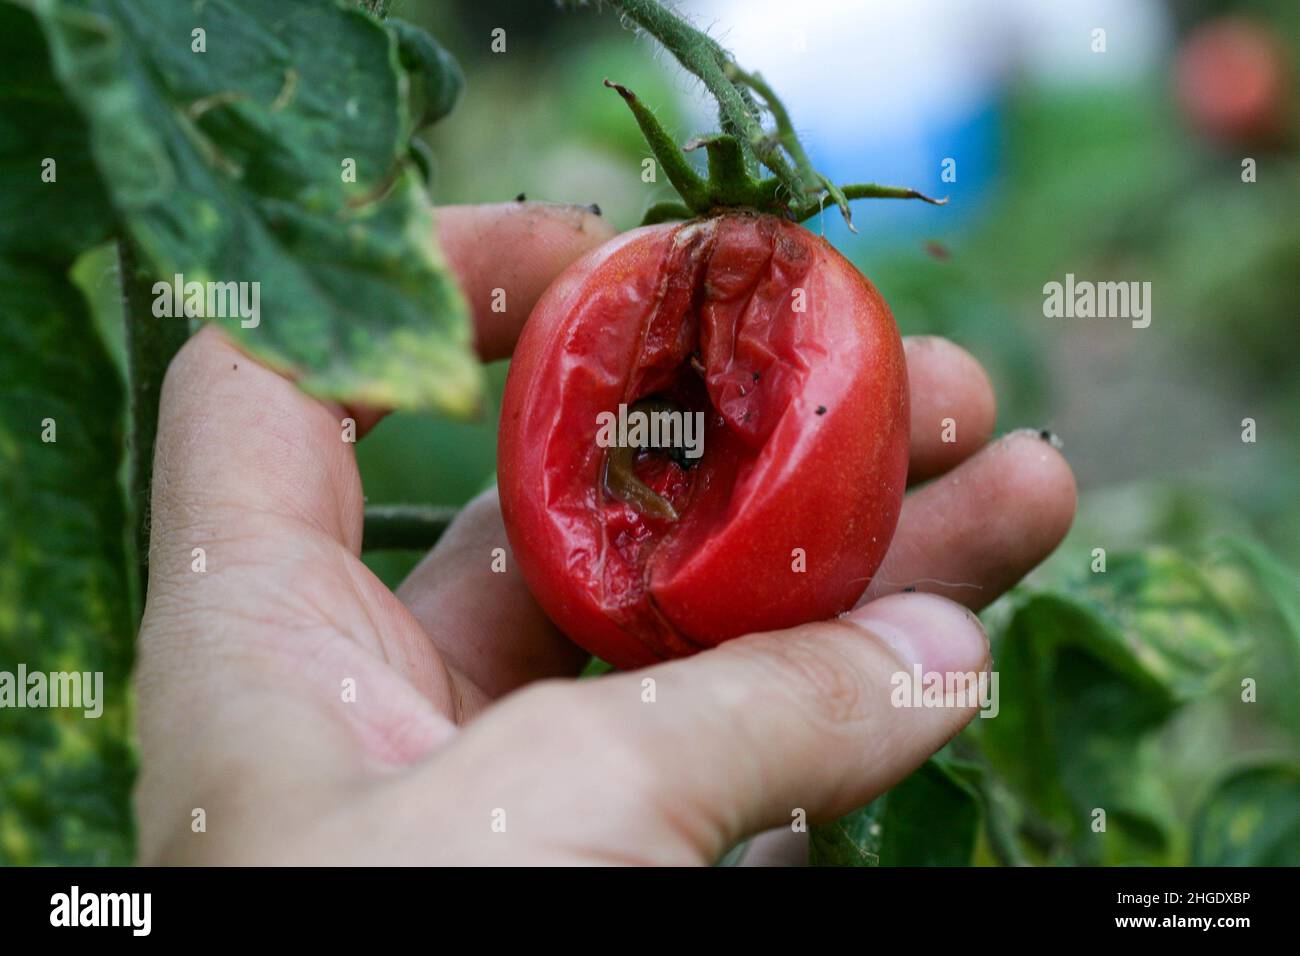 Malattie fungine pericolose dei pomodori, che colpisce i rappresentanti della nightshade in particolare le patate. Questa malattia è causata da organismi patogeni posizione tra funghi e protozoi macchia grigia Foto Stock